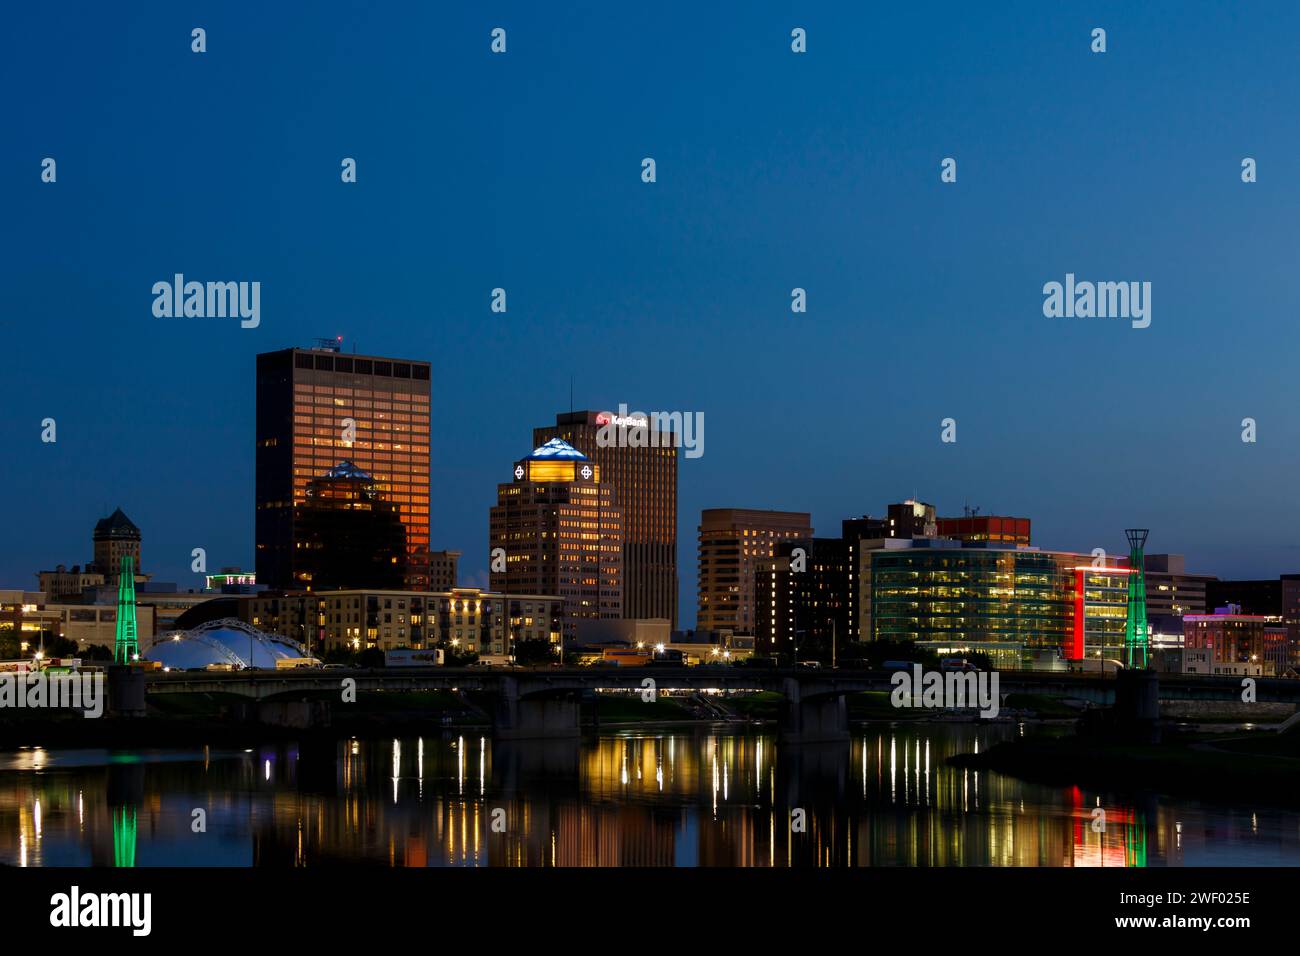 La ville de Dayton au crépuscule. Dayton, Ohio, USA. Inclut la clé le logo de la Banque. Banque D'Images